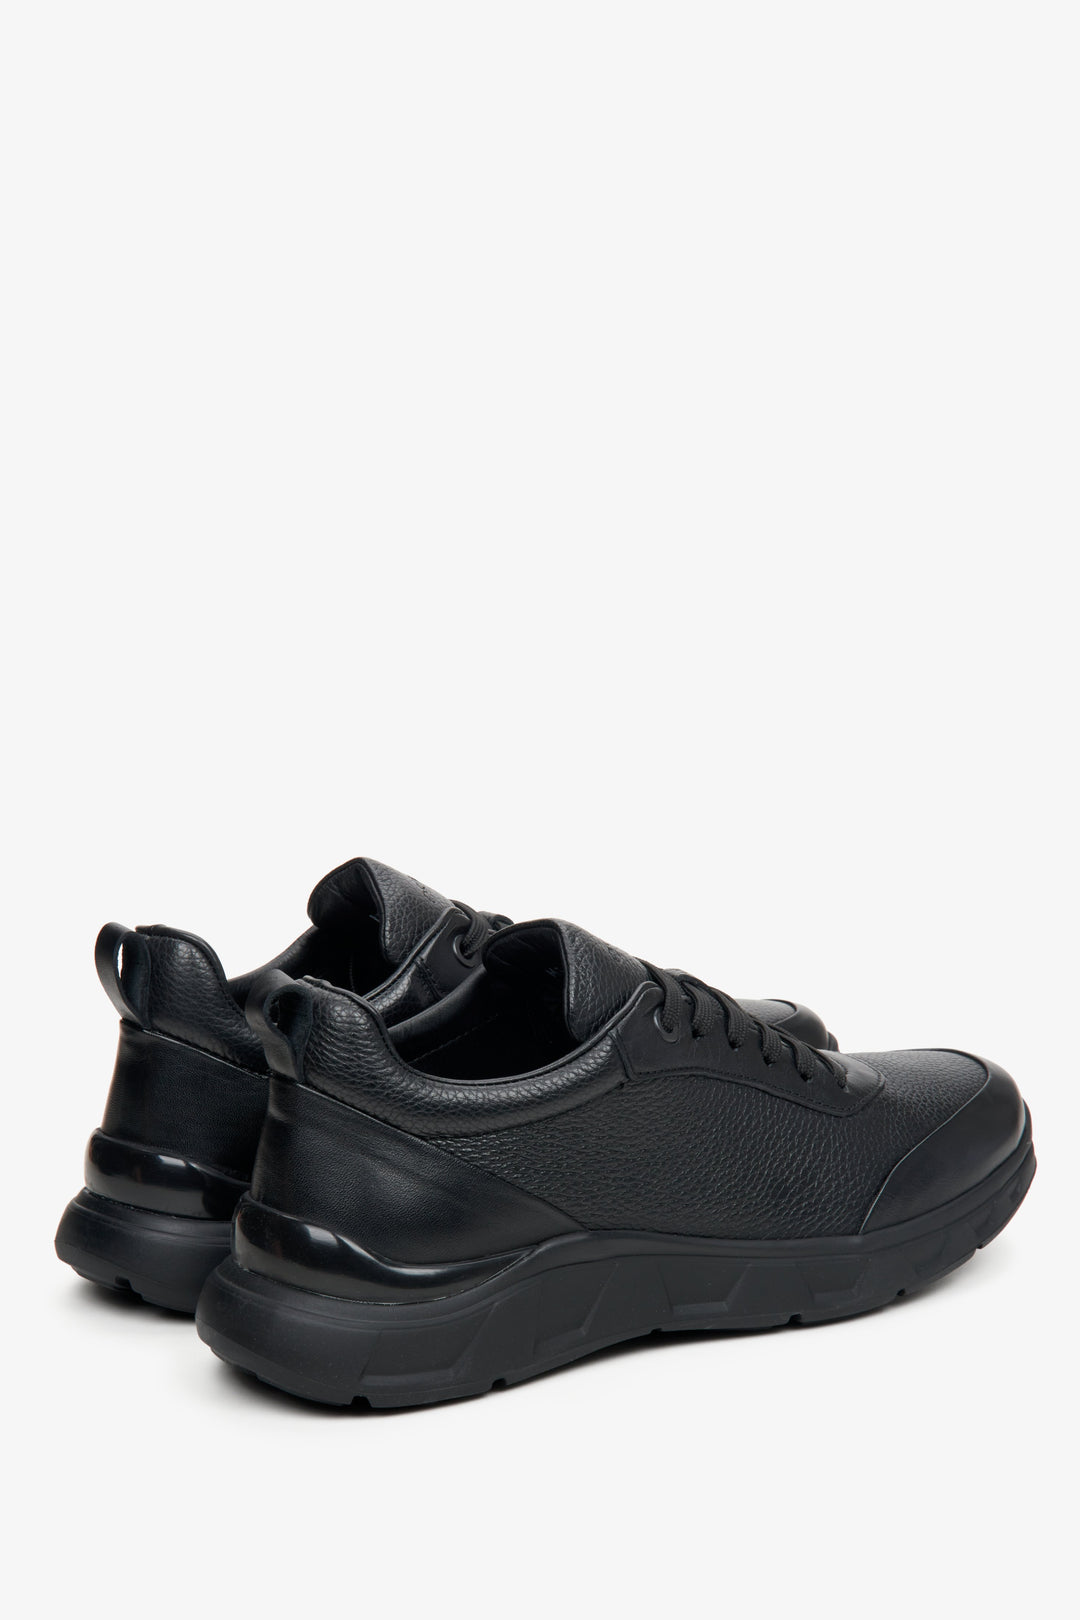 Czarne sneakersy męskie z teksturowanej skóry naturalnej Estro - zbliżenie na linię boczną i zapiętek butów.